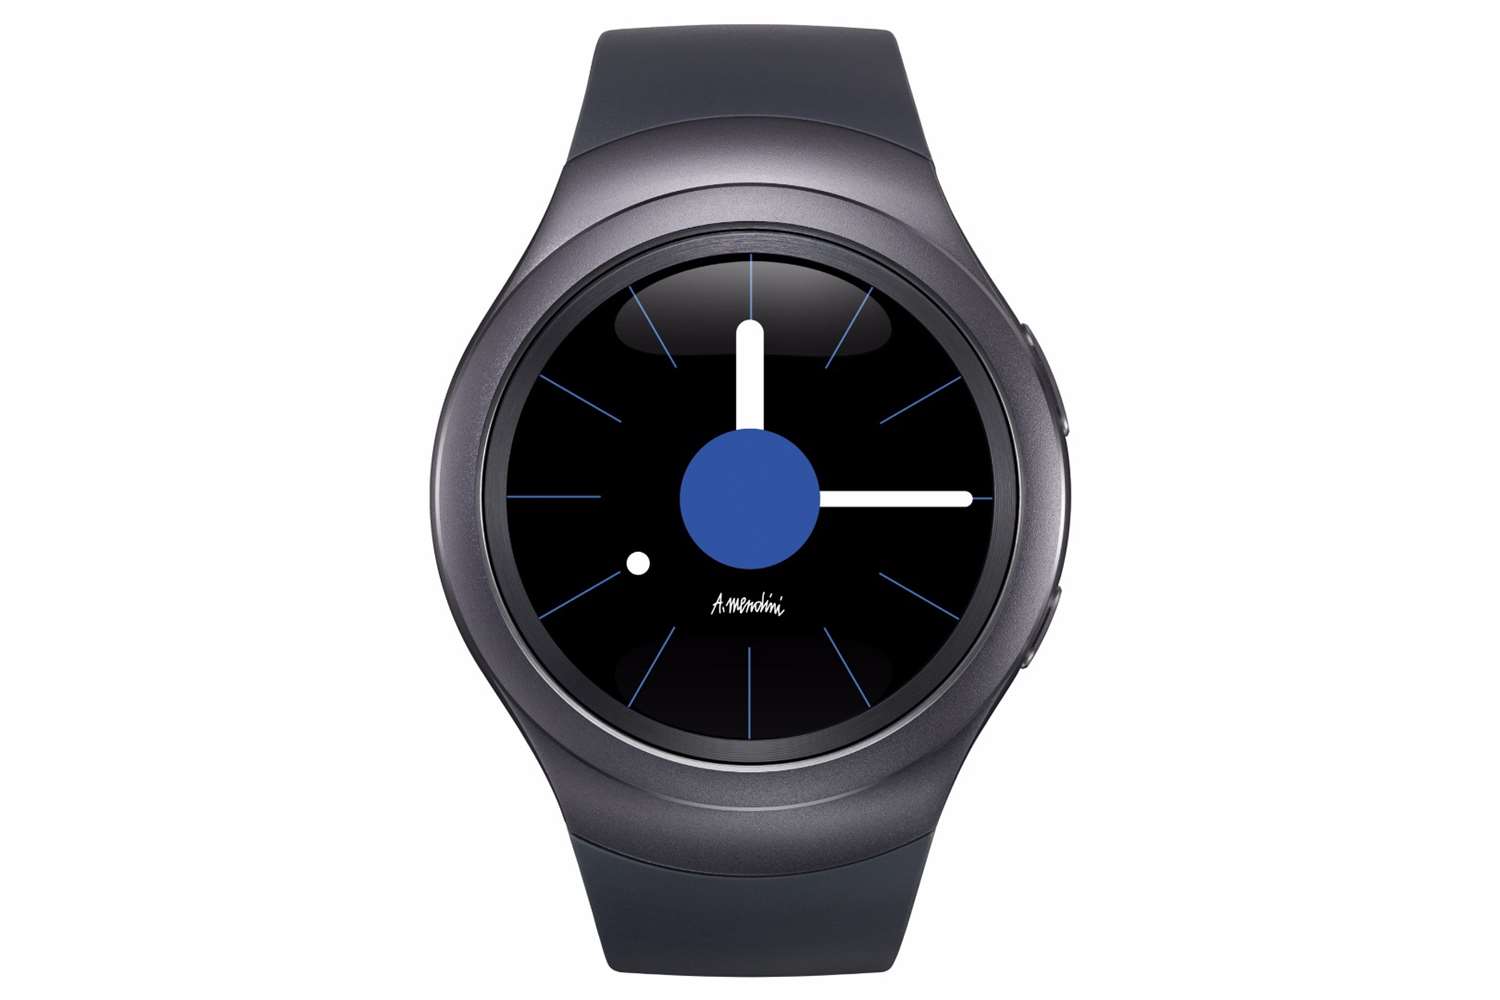 Galerie - Samsung Gear S2: definice chytrých hodinek [recenze] – SamsungMania.cz